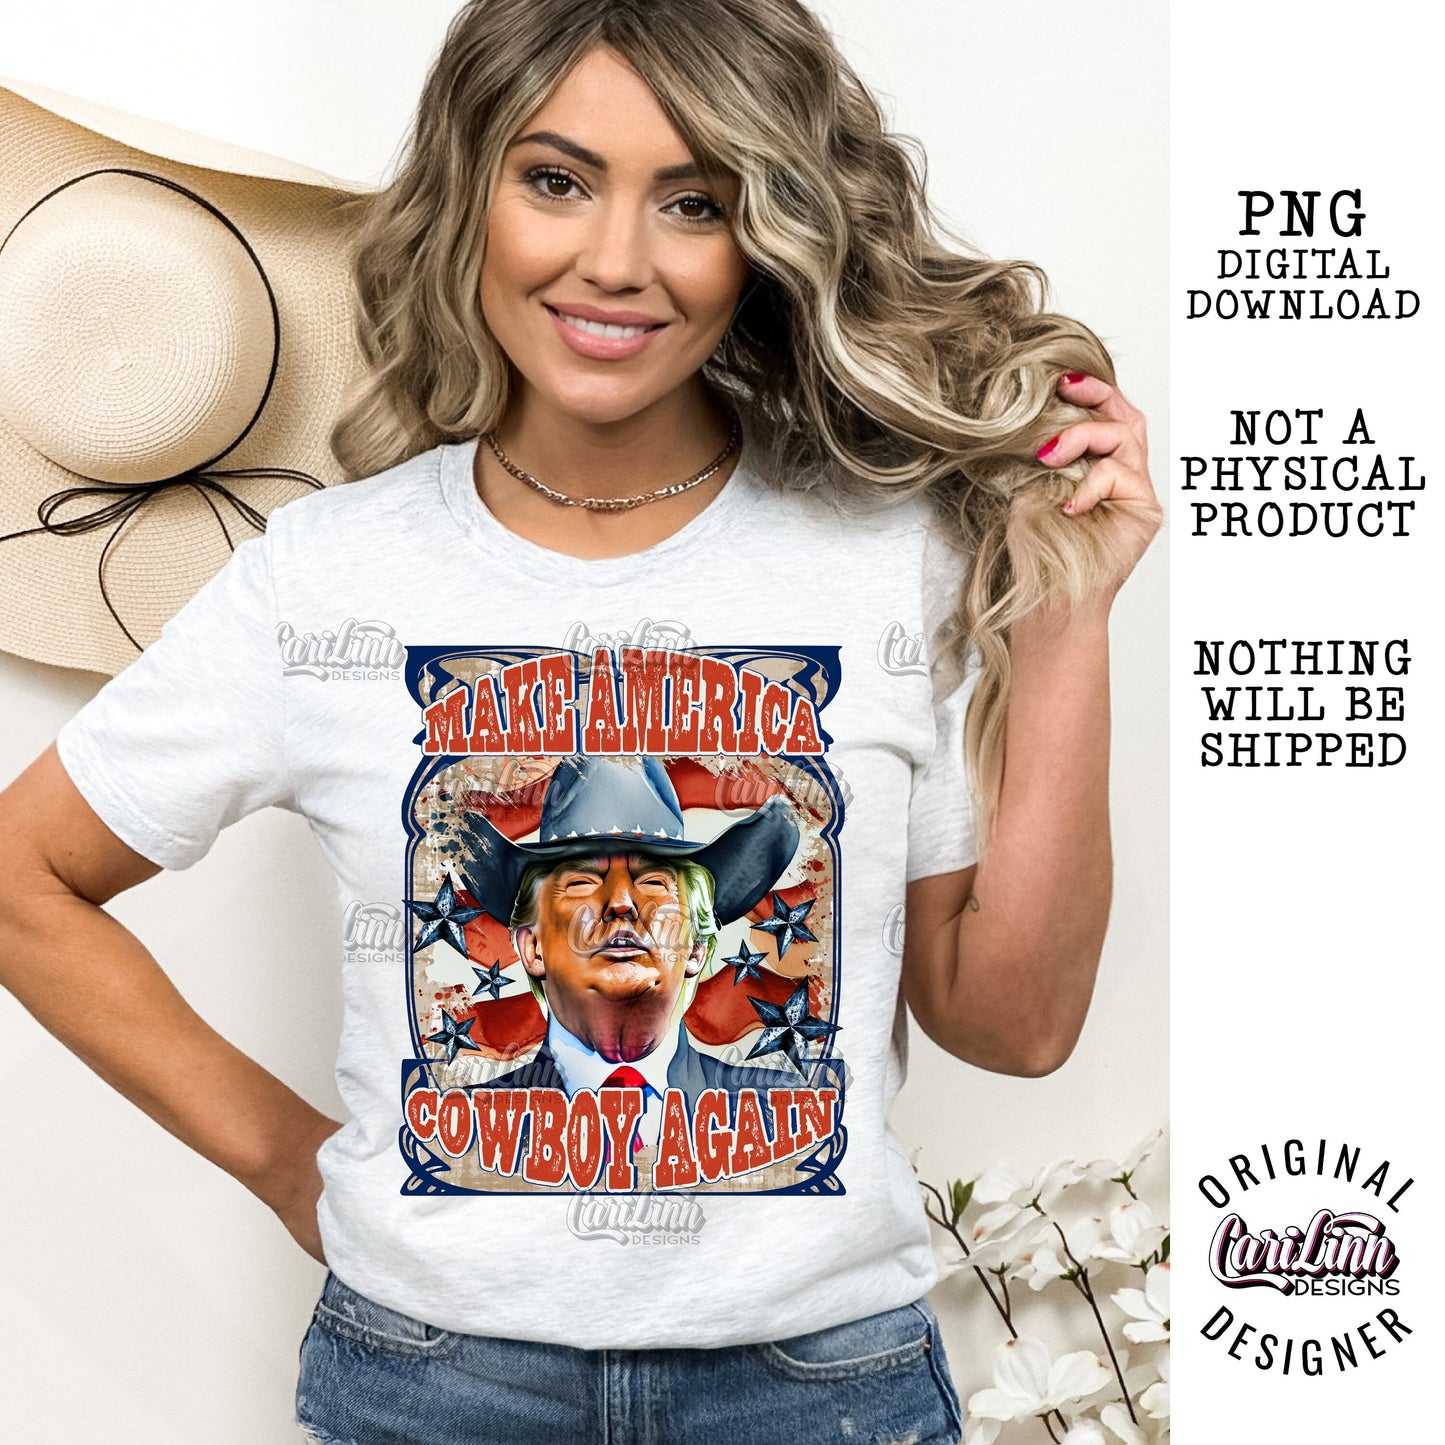 Make America Cowboy Again, PNG Digital Download for Sublimation, DTF, DTG